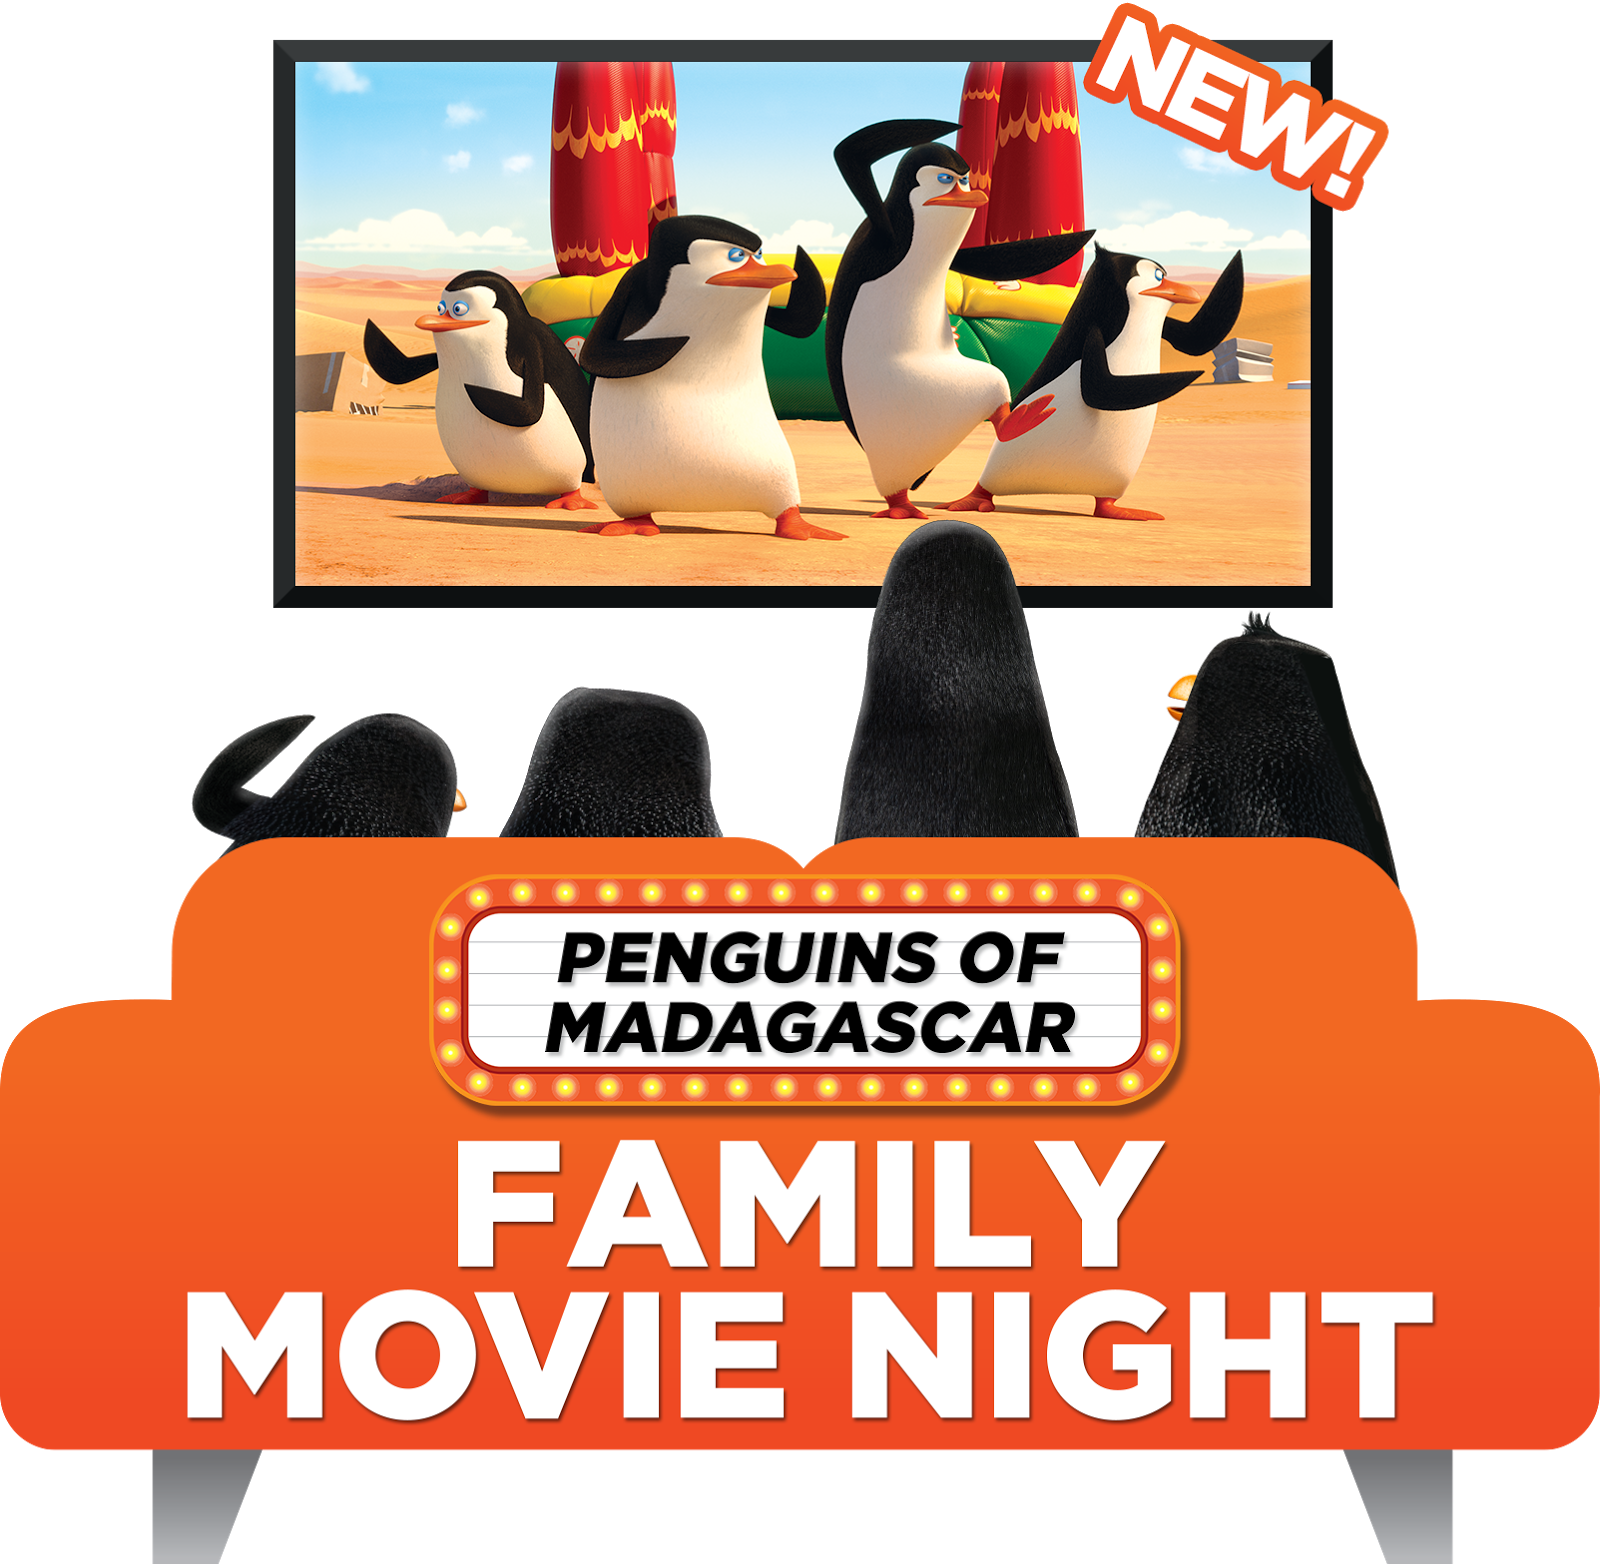 night clipart family movie